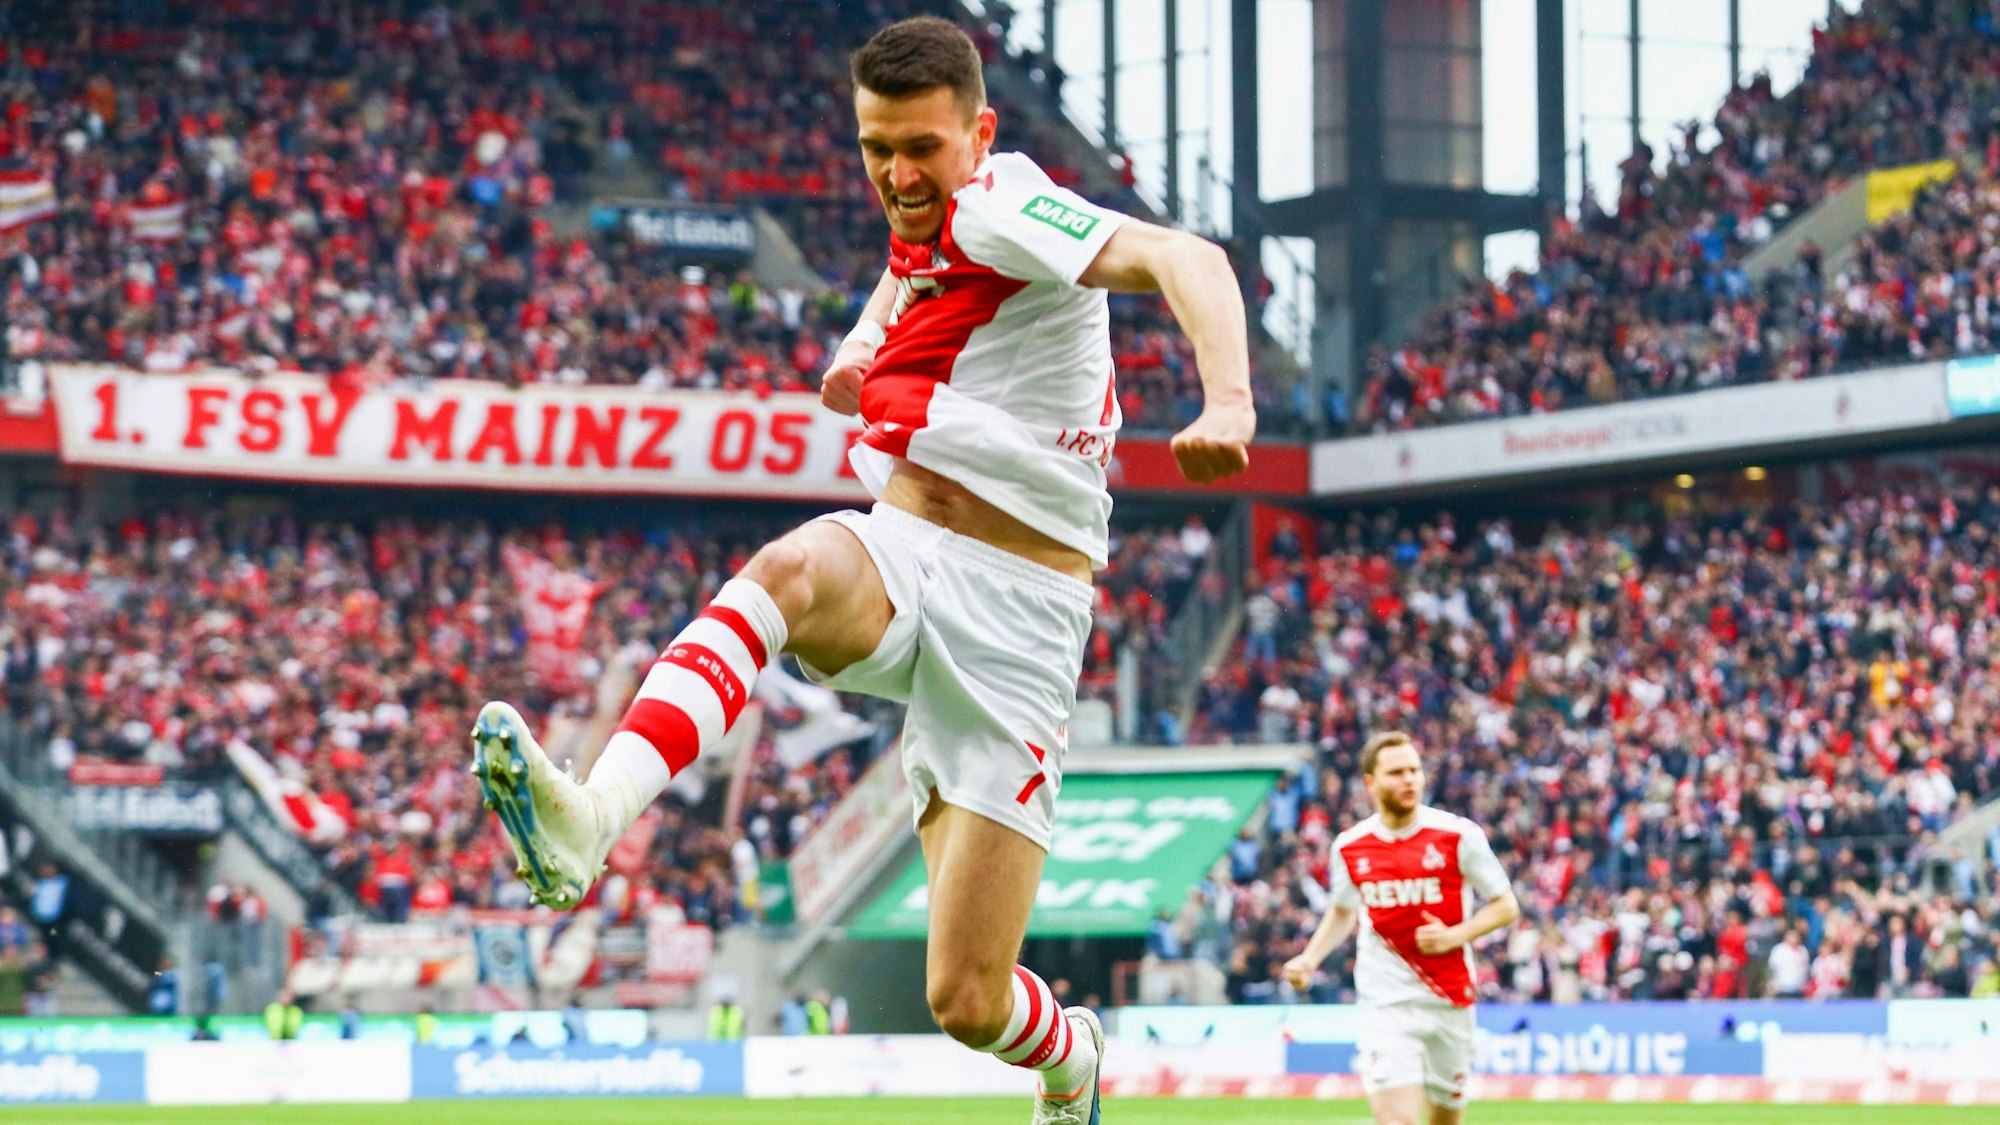 Dejan Ljubicic feiert seinen Treffer zum 1:1 gegen Mainz.